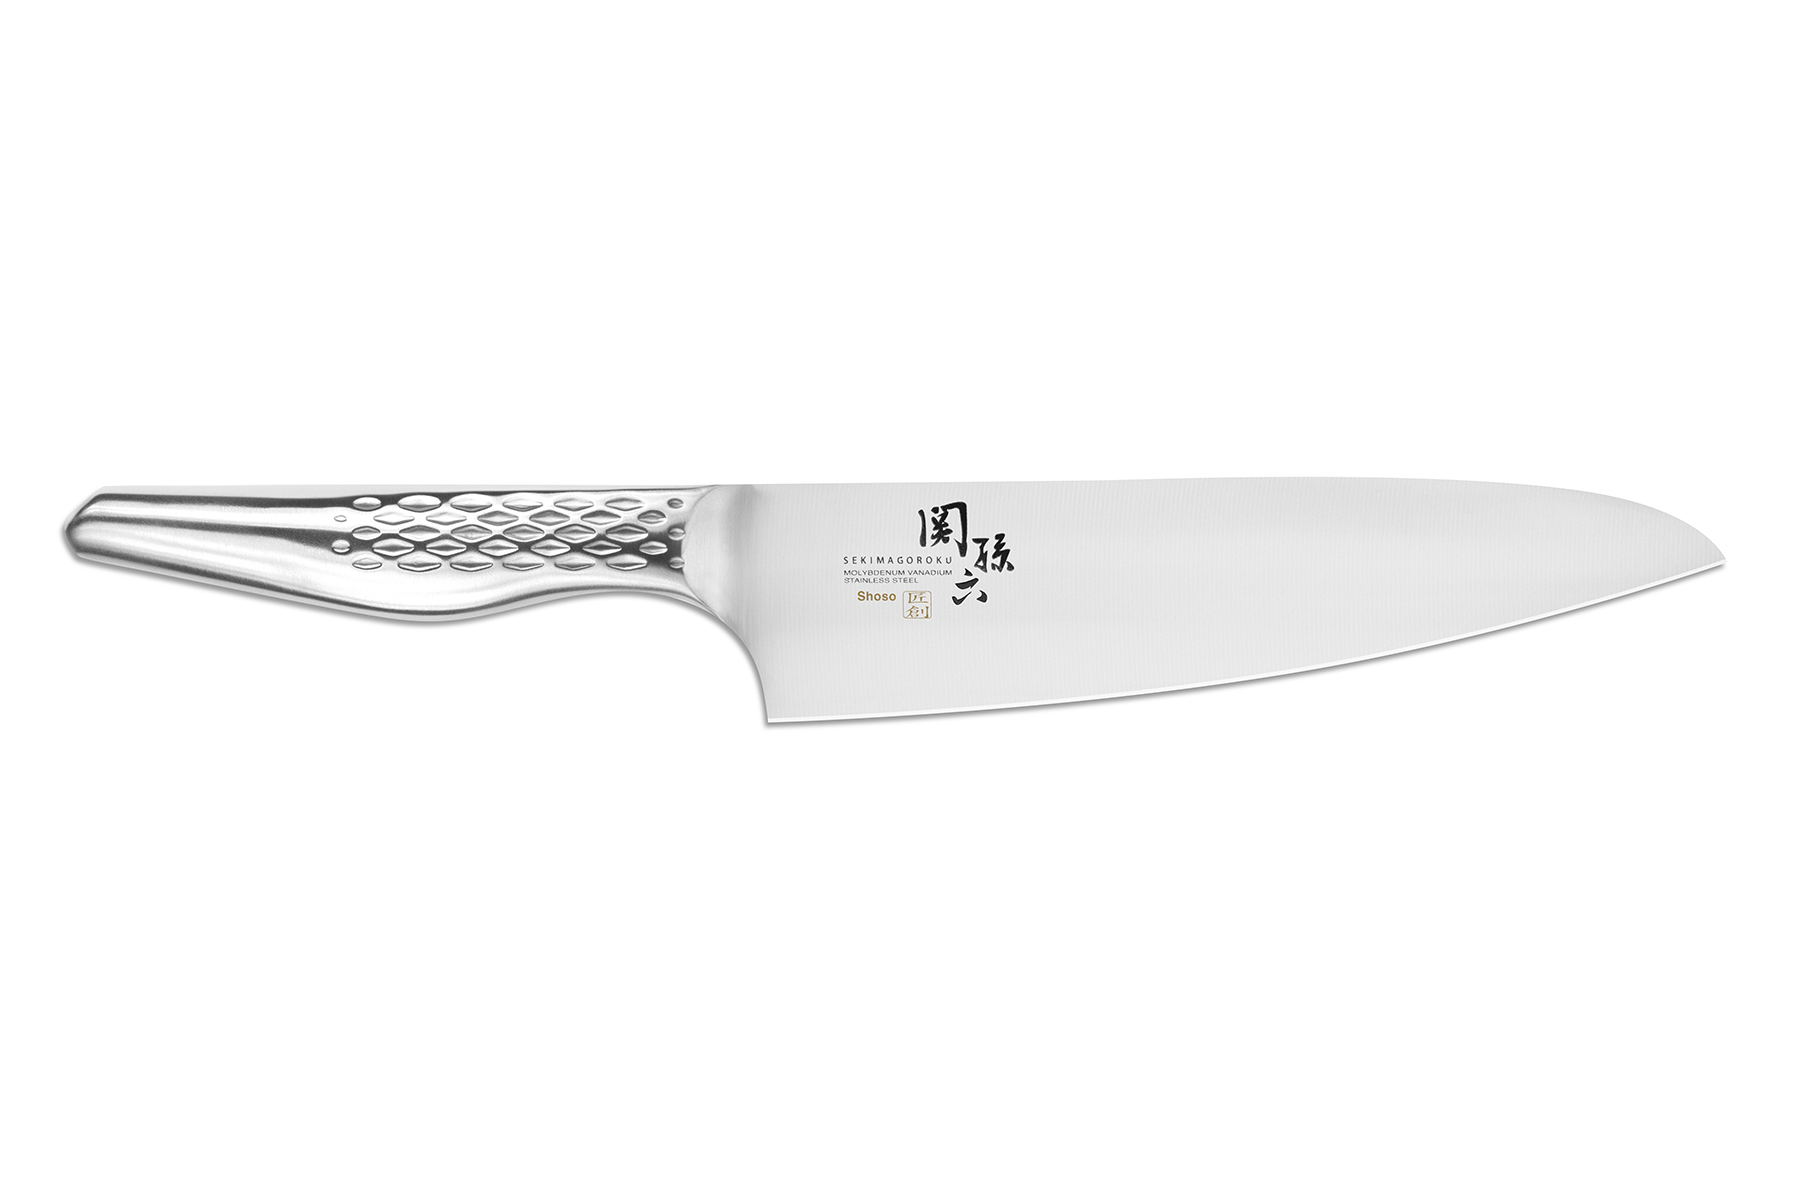 Couteau de chef japonais artisanal Kajiwara 18cm